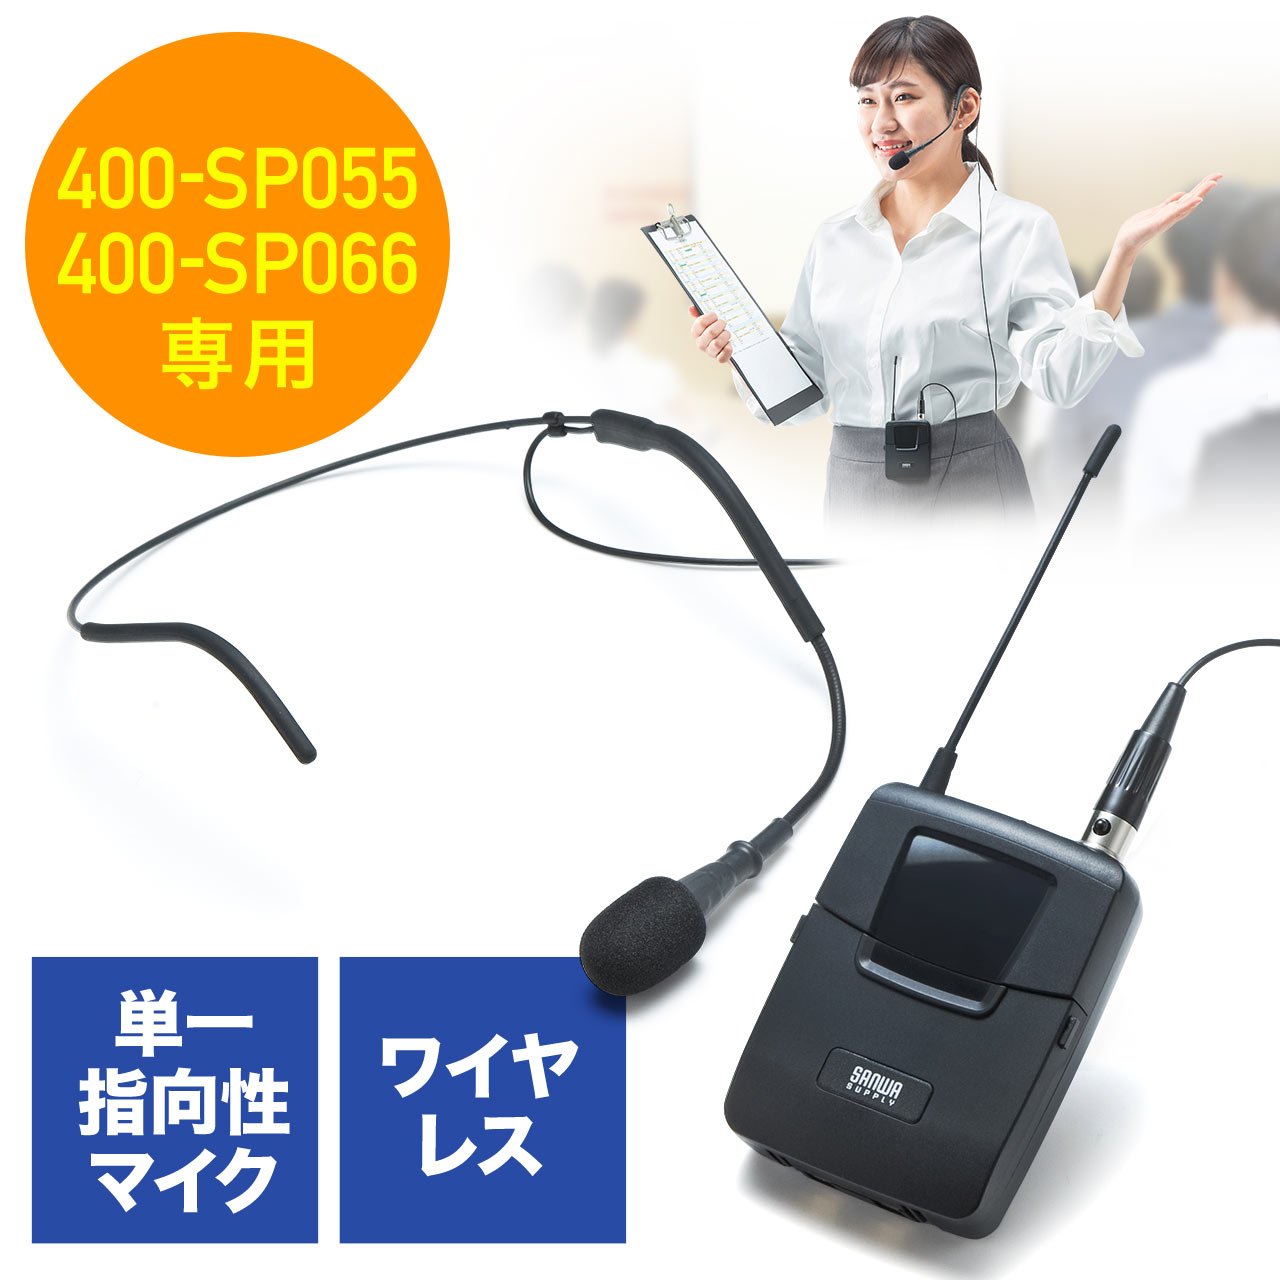 【ガジェットセール】ワイヤレスヘッドマイク 400-SP055/400-SP066 拡声機用 ハンズフリーヘッドセット ツーピース型 選挙グッズ  400-SP075